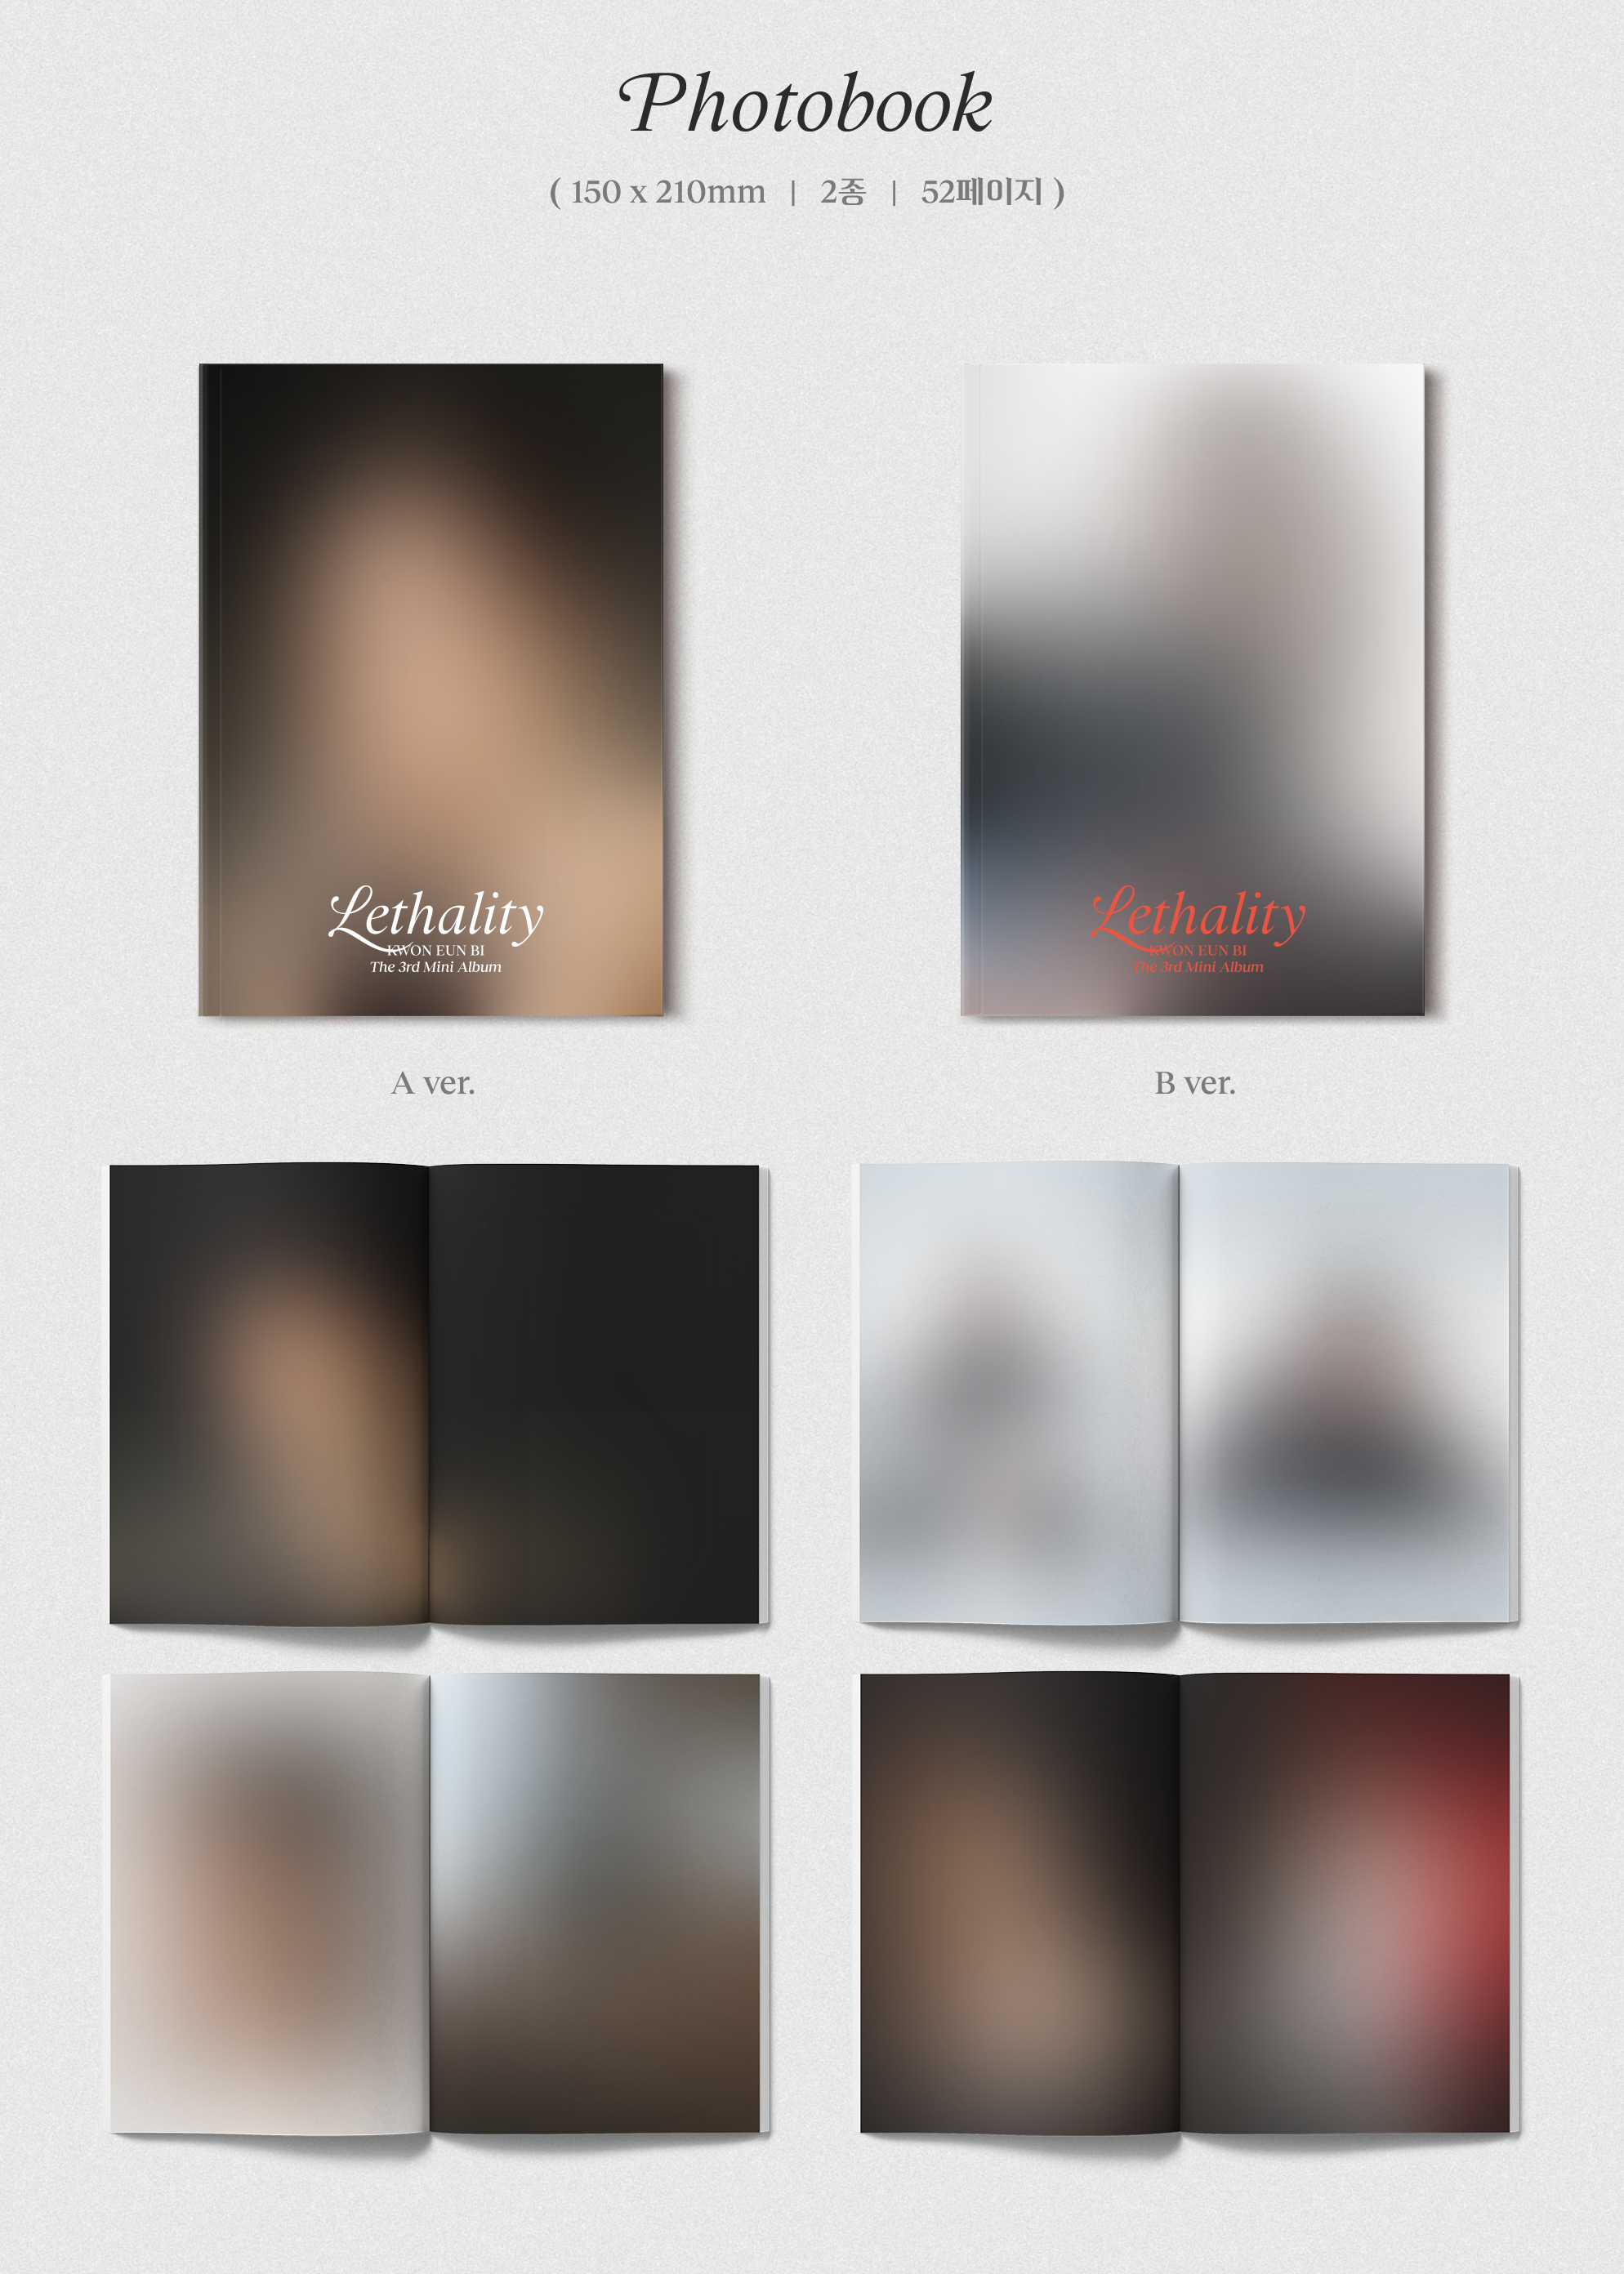 【RUBI JAPAN会員特典付】＜輸入盤CD＞ KWON EUN BI The 3rd Mini Album「Lethality」A ver.